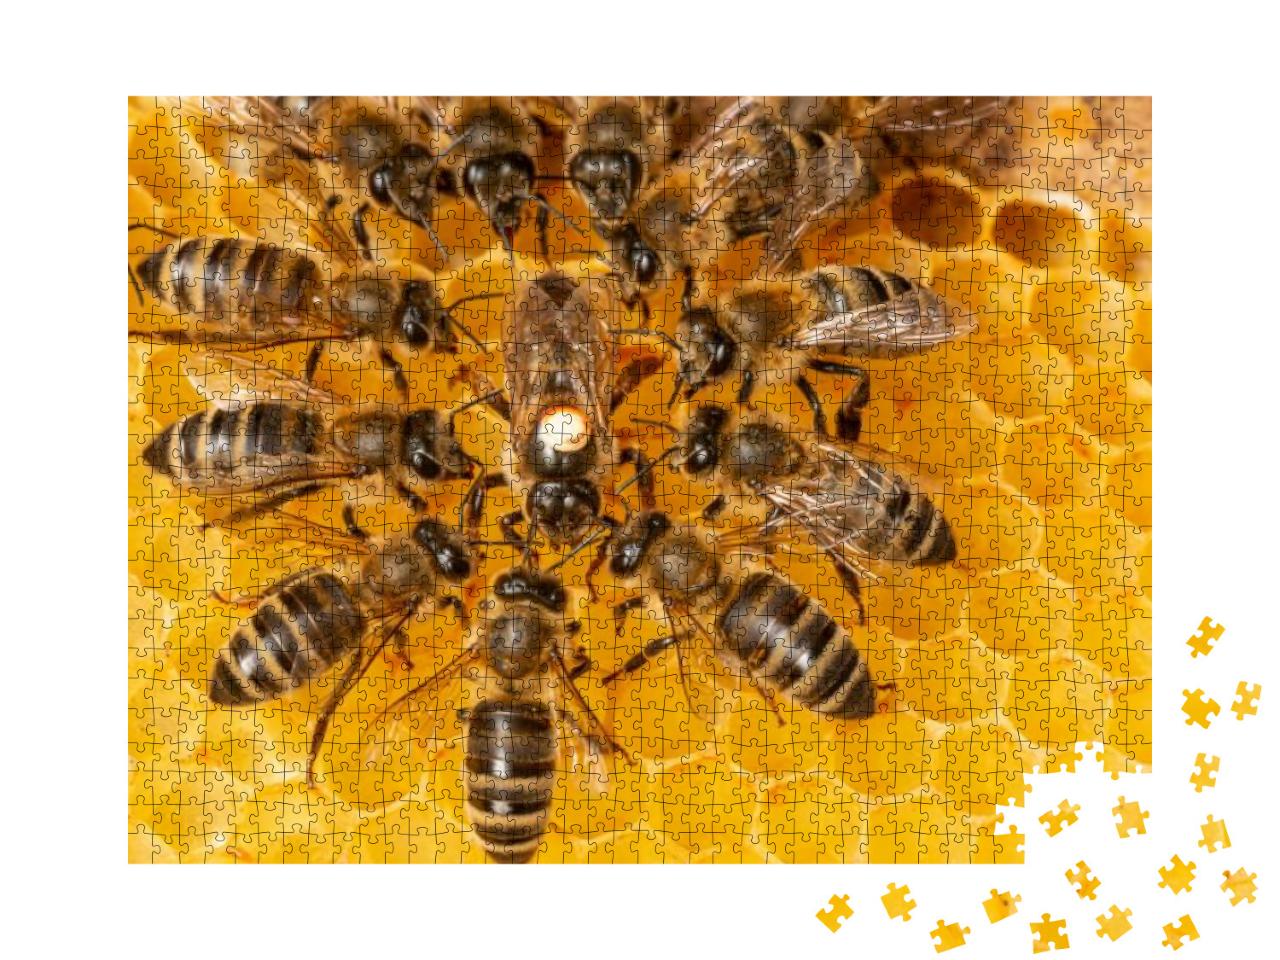 Puzzle 1000 Teile „Bienenkönigin markiert mit einem Punkt umgeben von Arbeiterinnen“